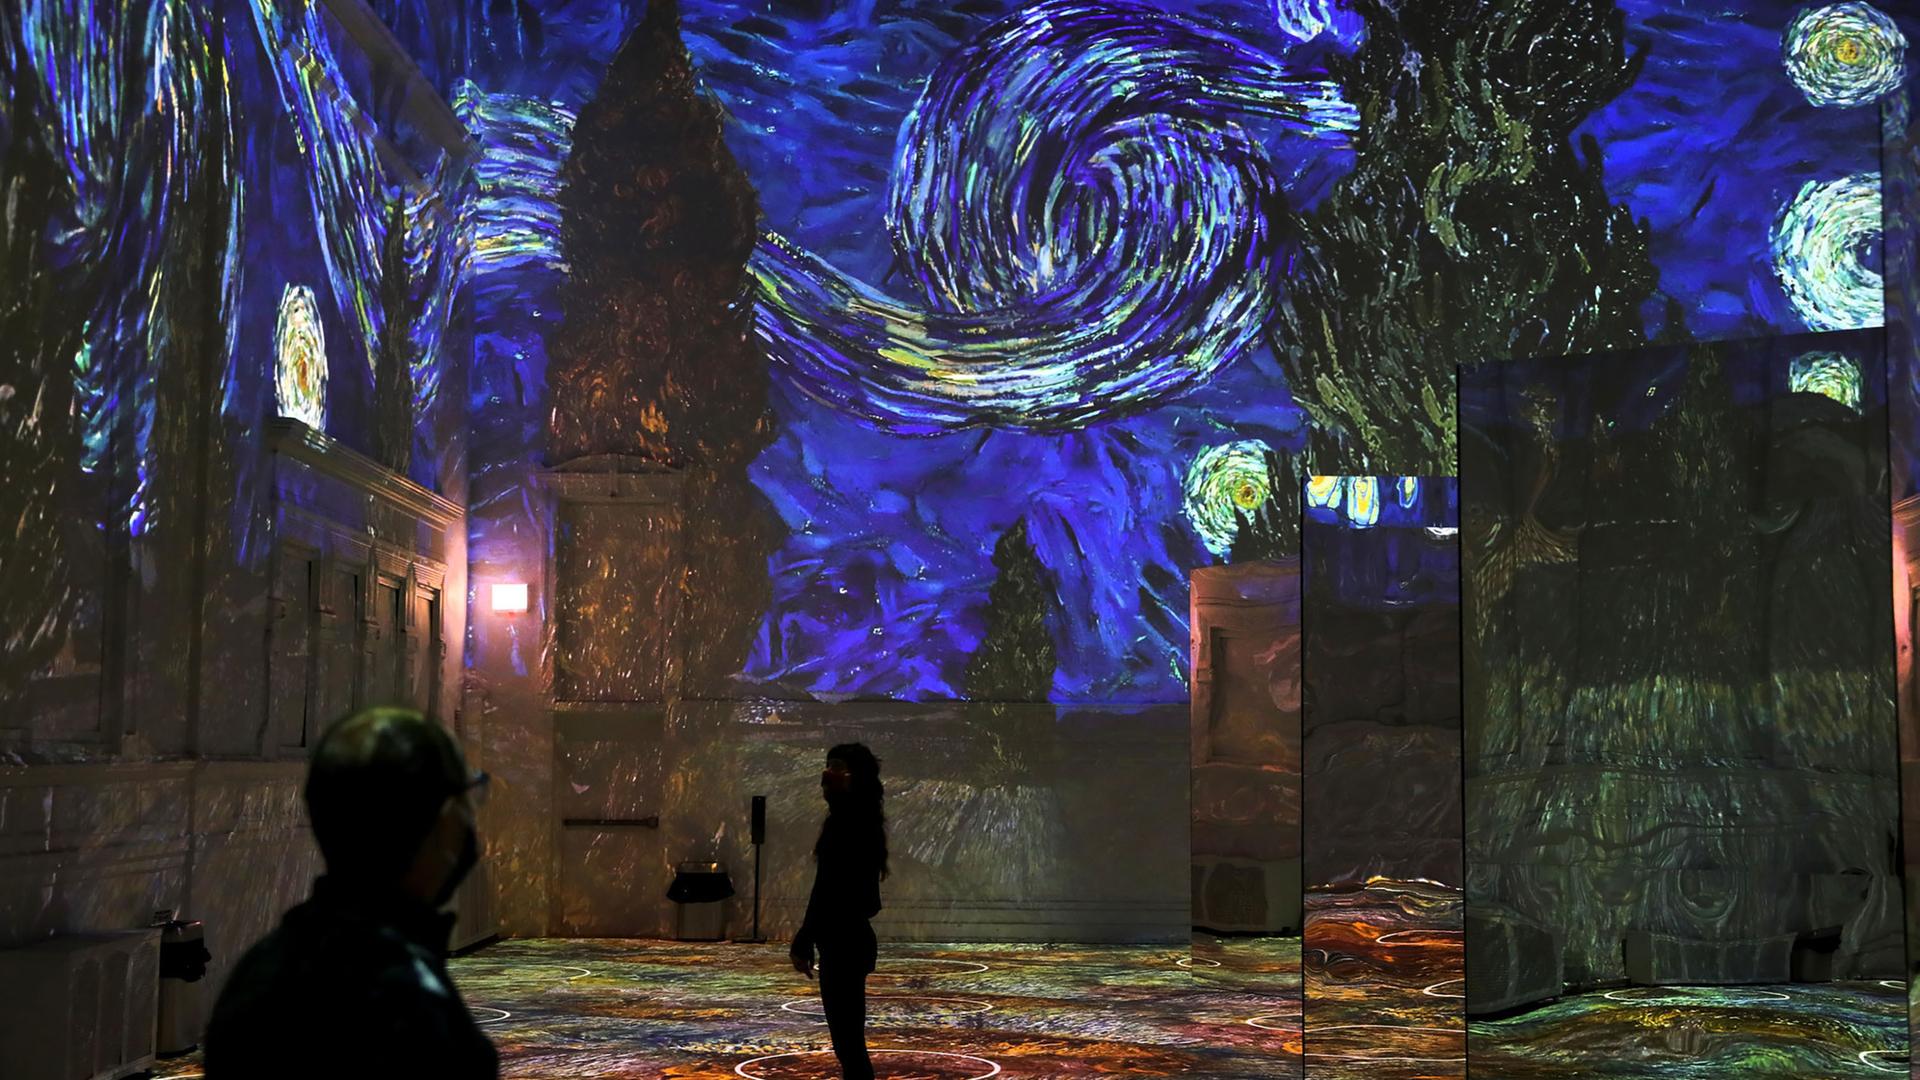 Riesige Projektion des Gemäldes "Die Sternennacht" von Vincent van Gogh in einem Museum